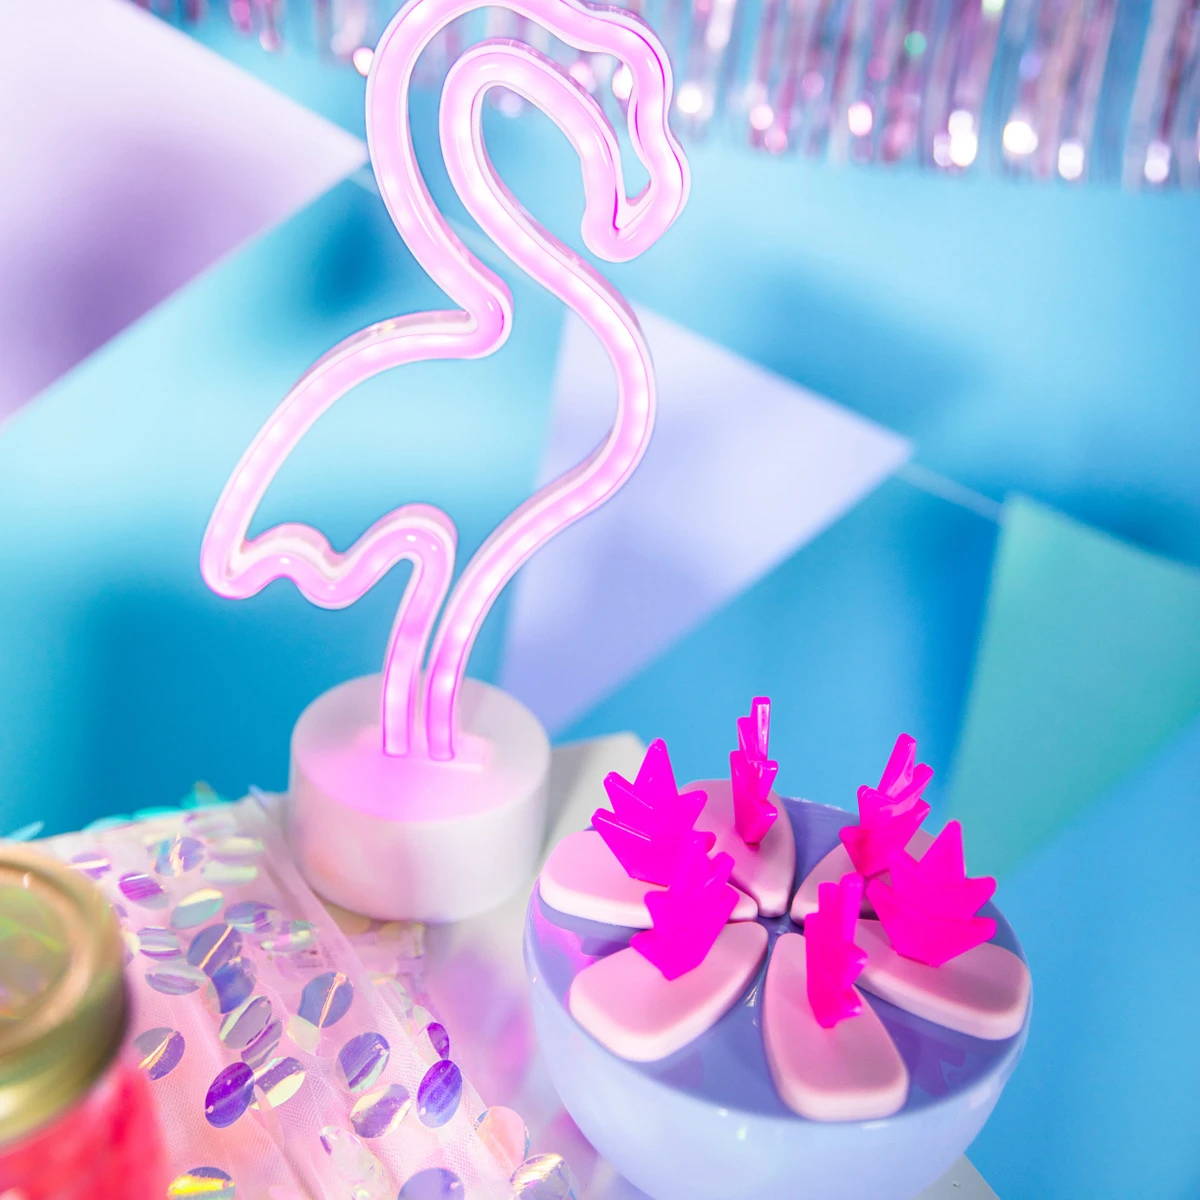 Flamingo neonljus bredvid en skål med flamingoformade drinkomrörare, vilket ger ett livligt rosa sken till miljön.